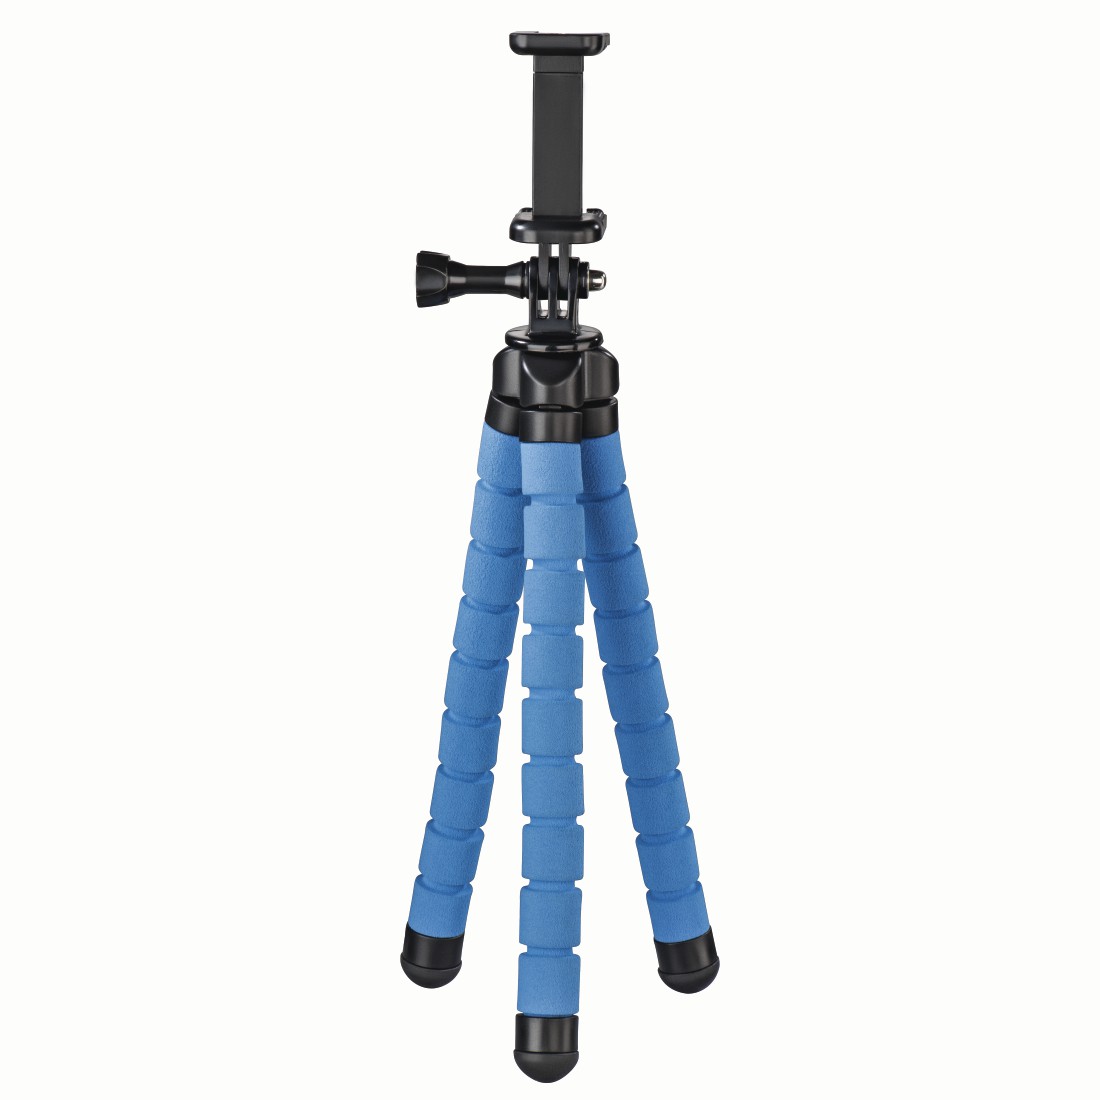 Hama Stativ Flex für Smartphone und GoPro, 26 cm, Blau